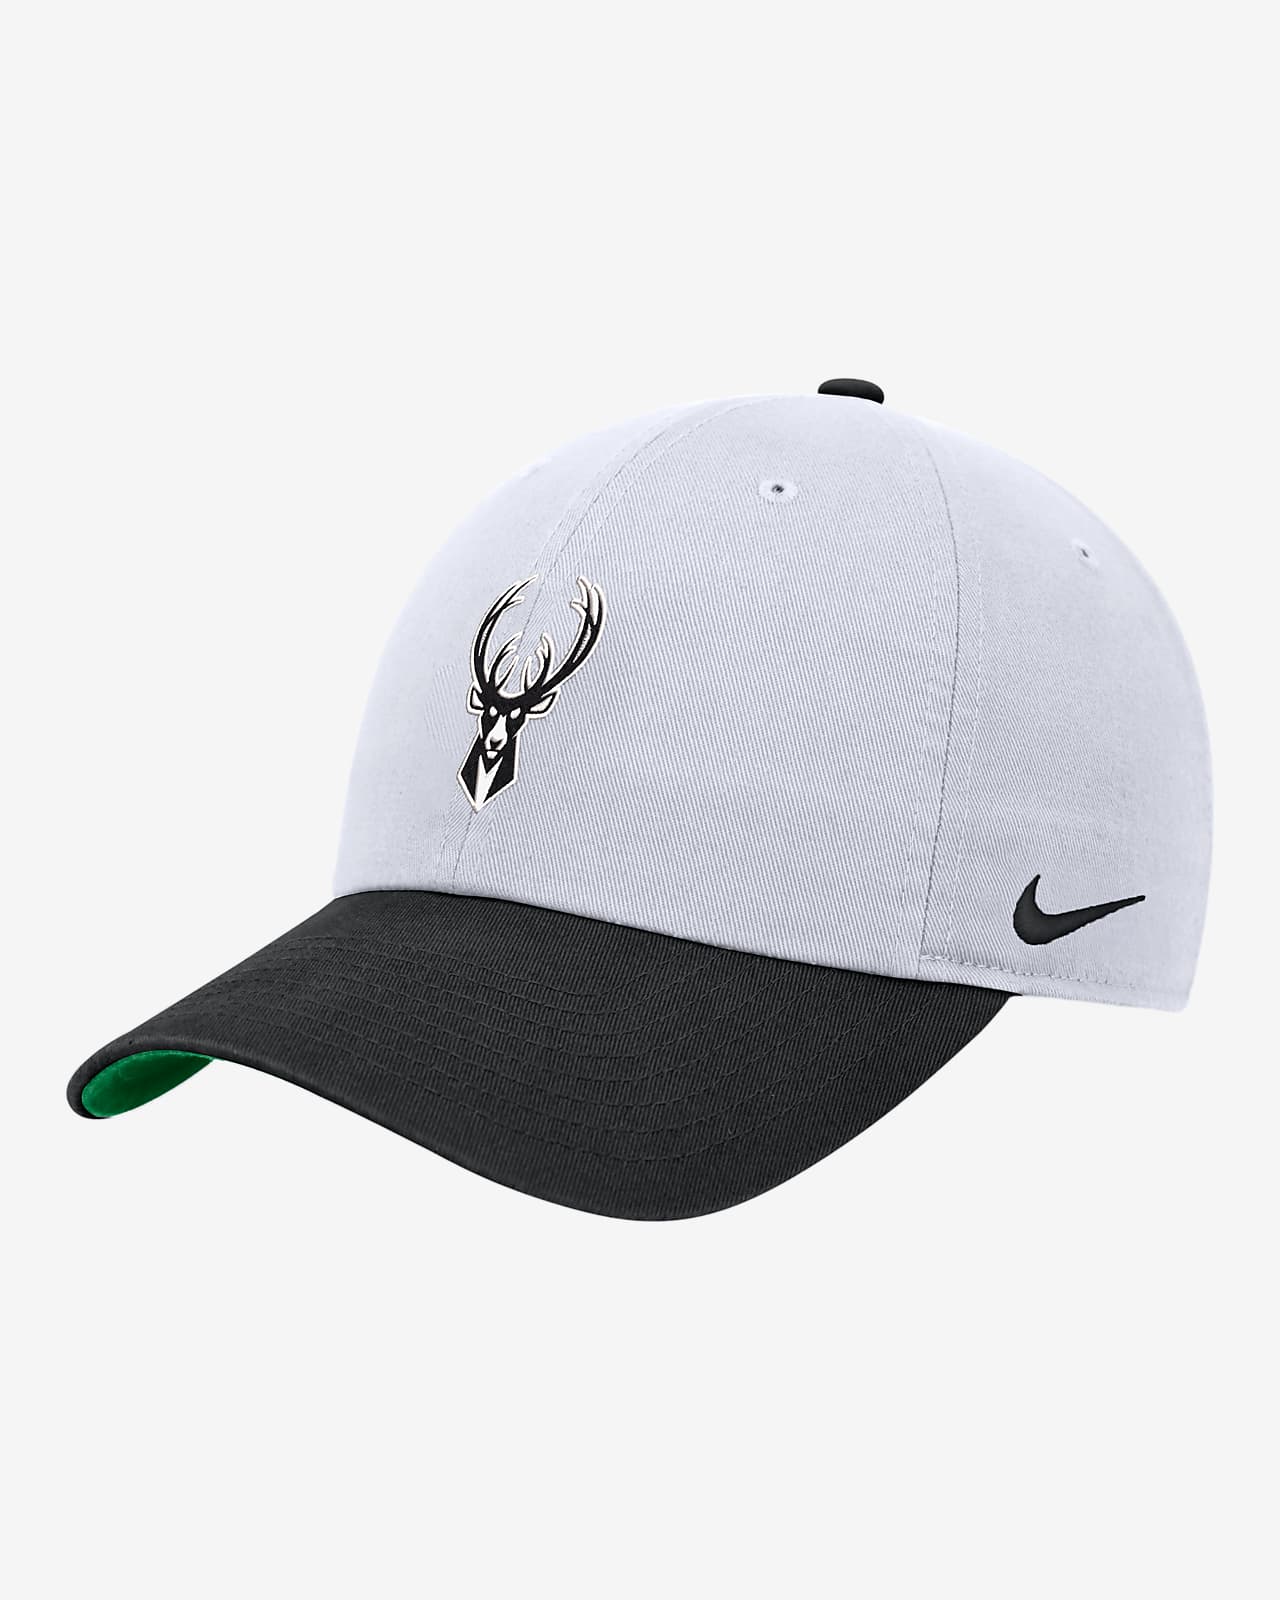 Milwaukee Bucks Select Series Nike NBA Cap